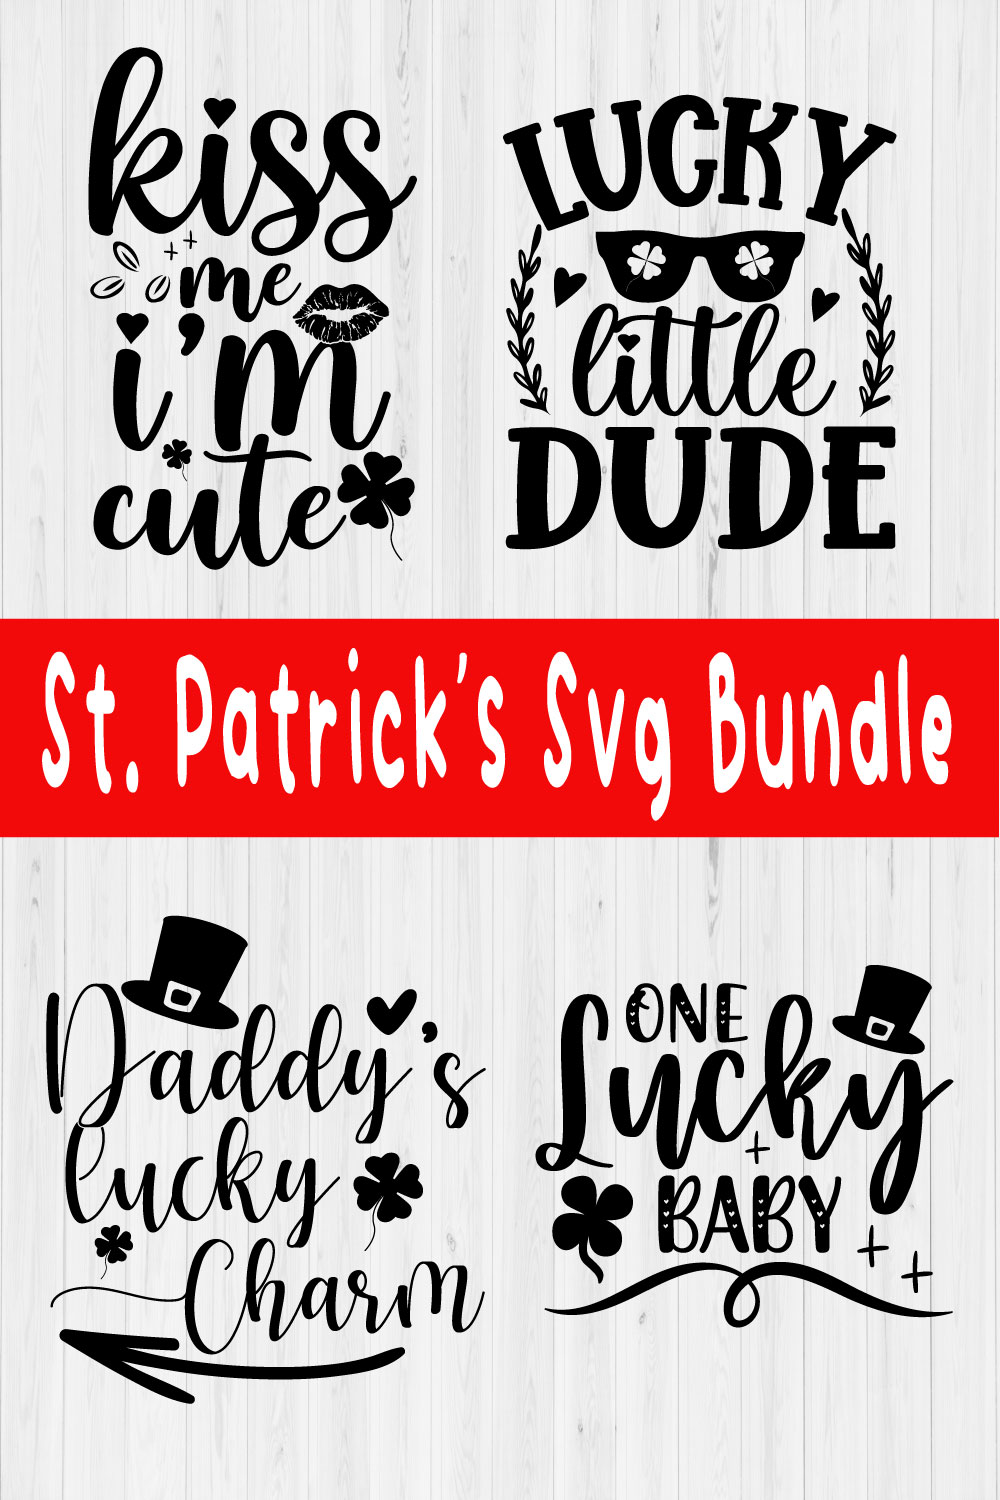 Happy St Patrick's Day Bundle Vol2 pinterest preview image.